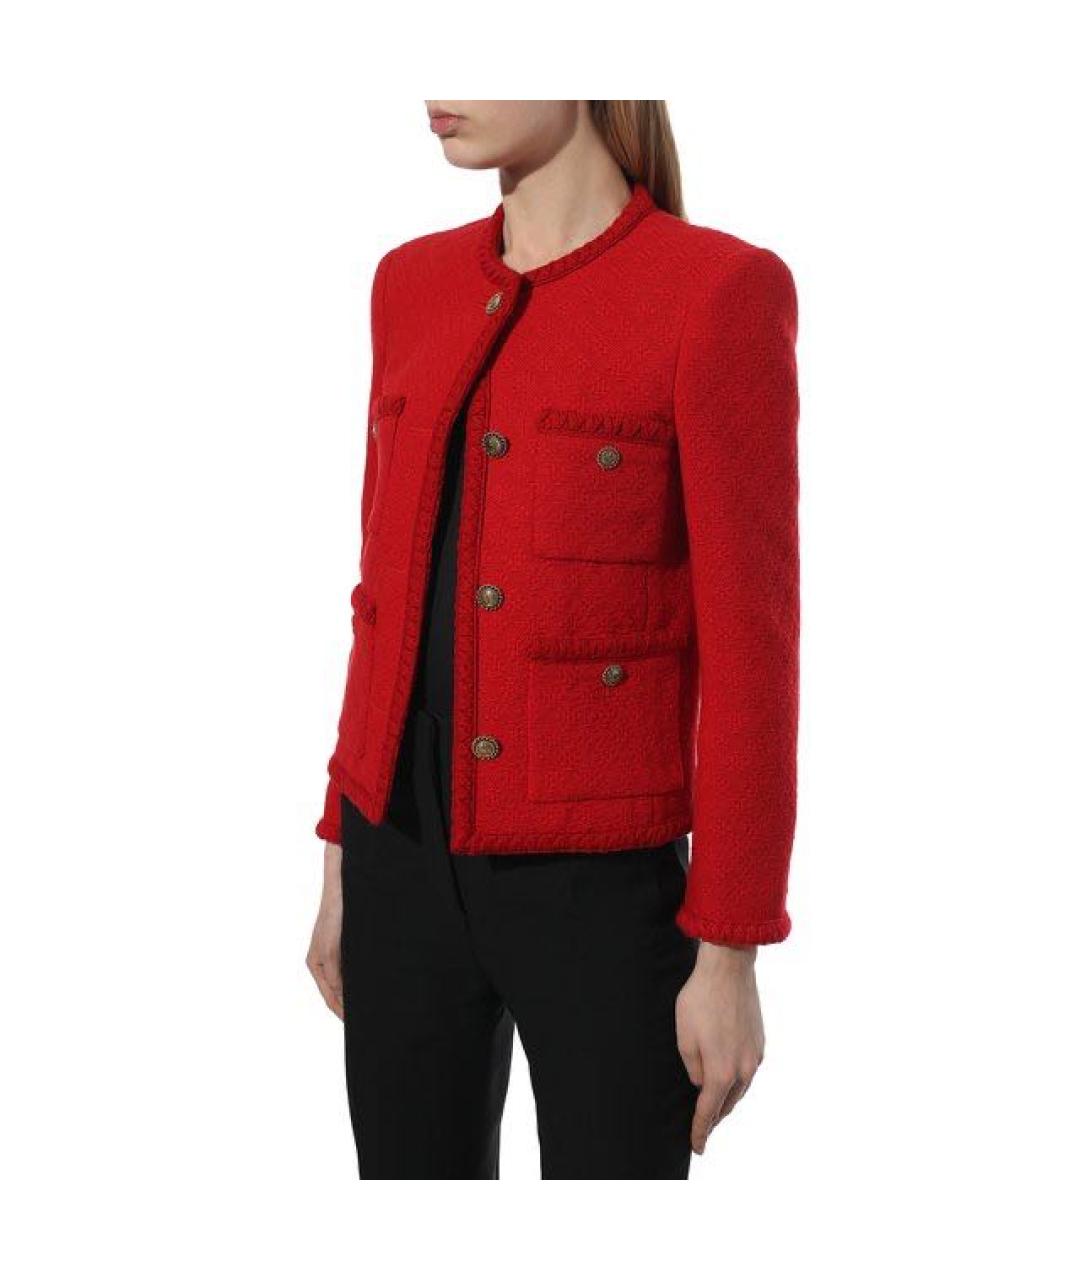 SAINT LAURENT Красный шерстяной жакет/пиджак, фото 3